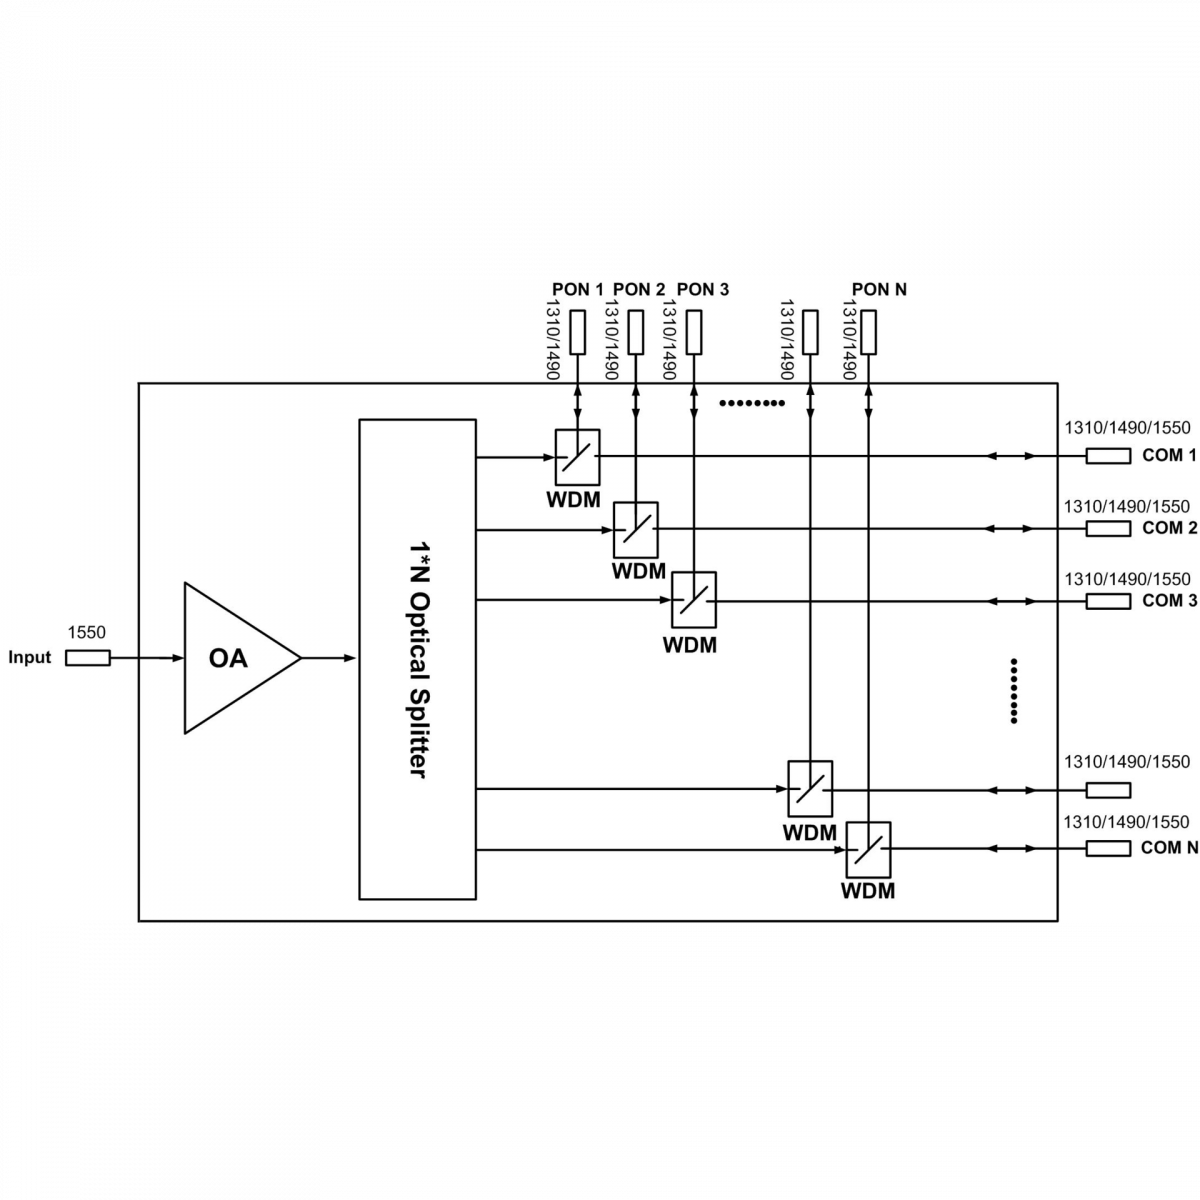 Оптический усилитель VERMAX для сетей КТВ, 16*20dBm, WDM фильтр PON